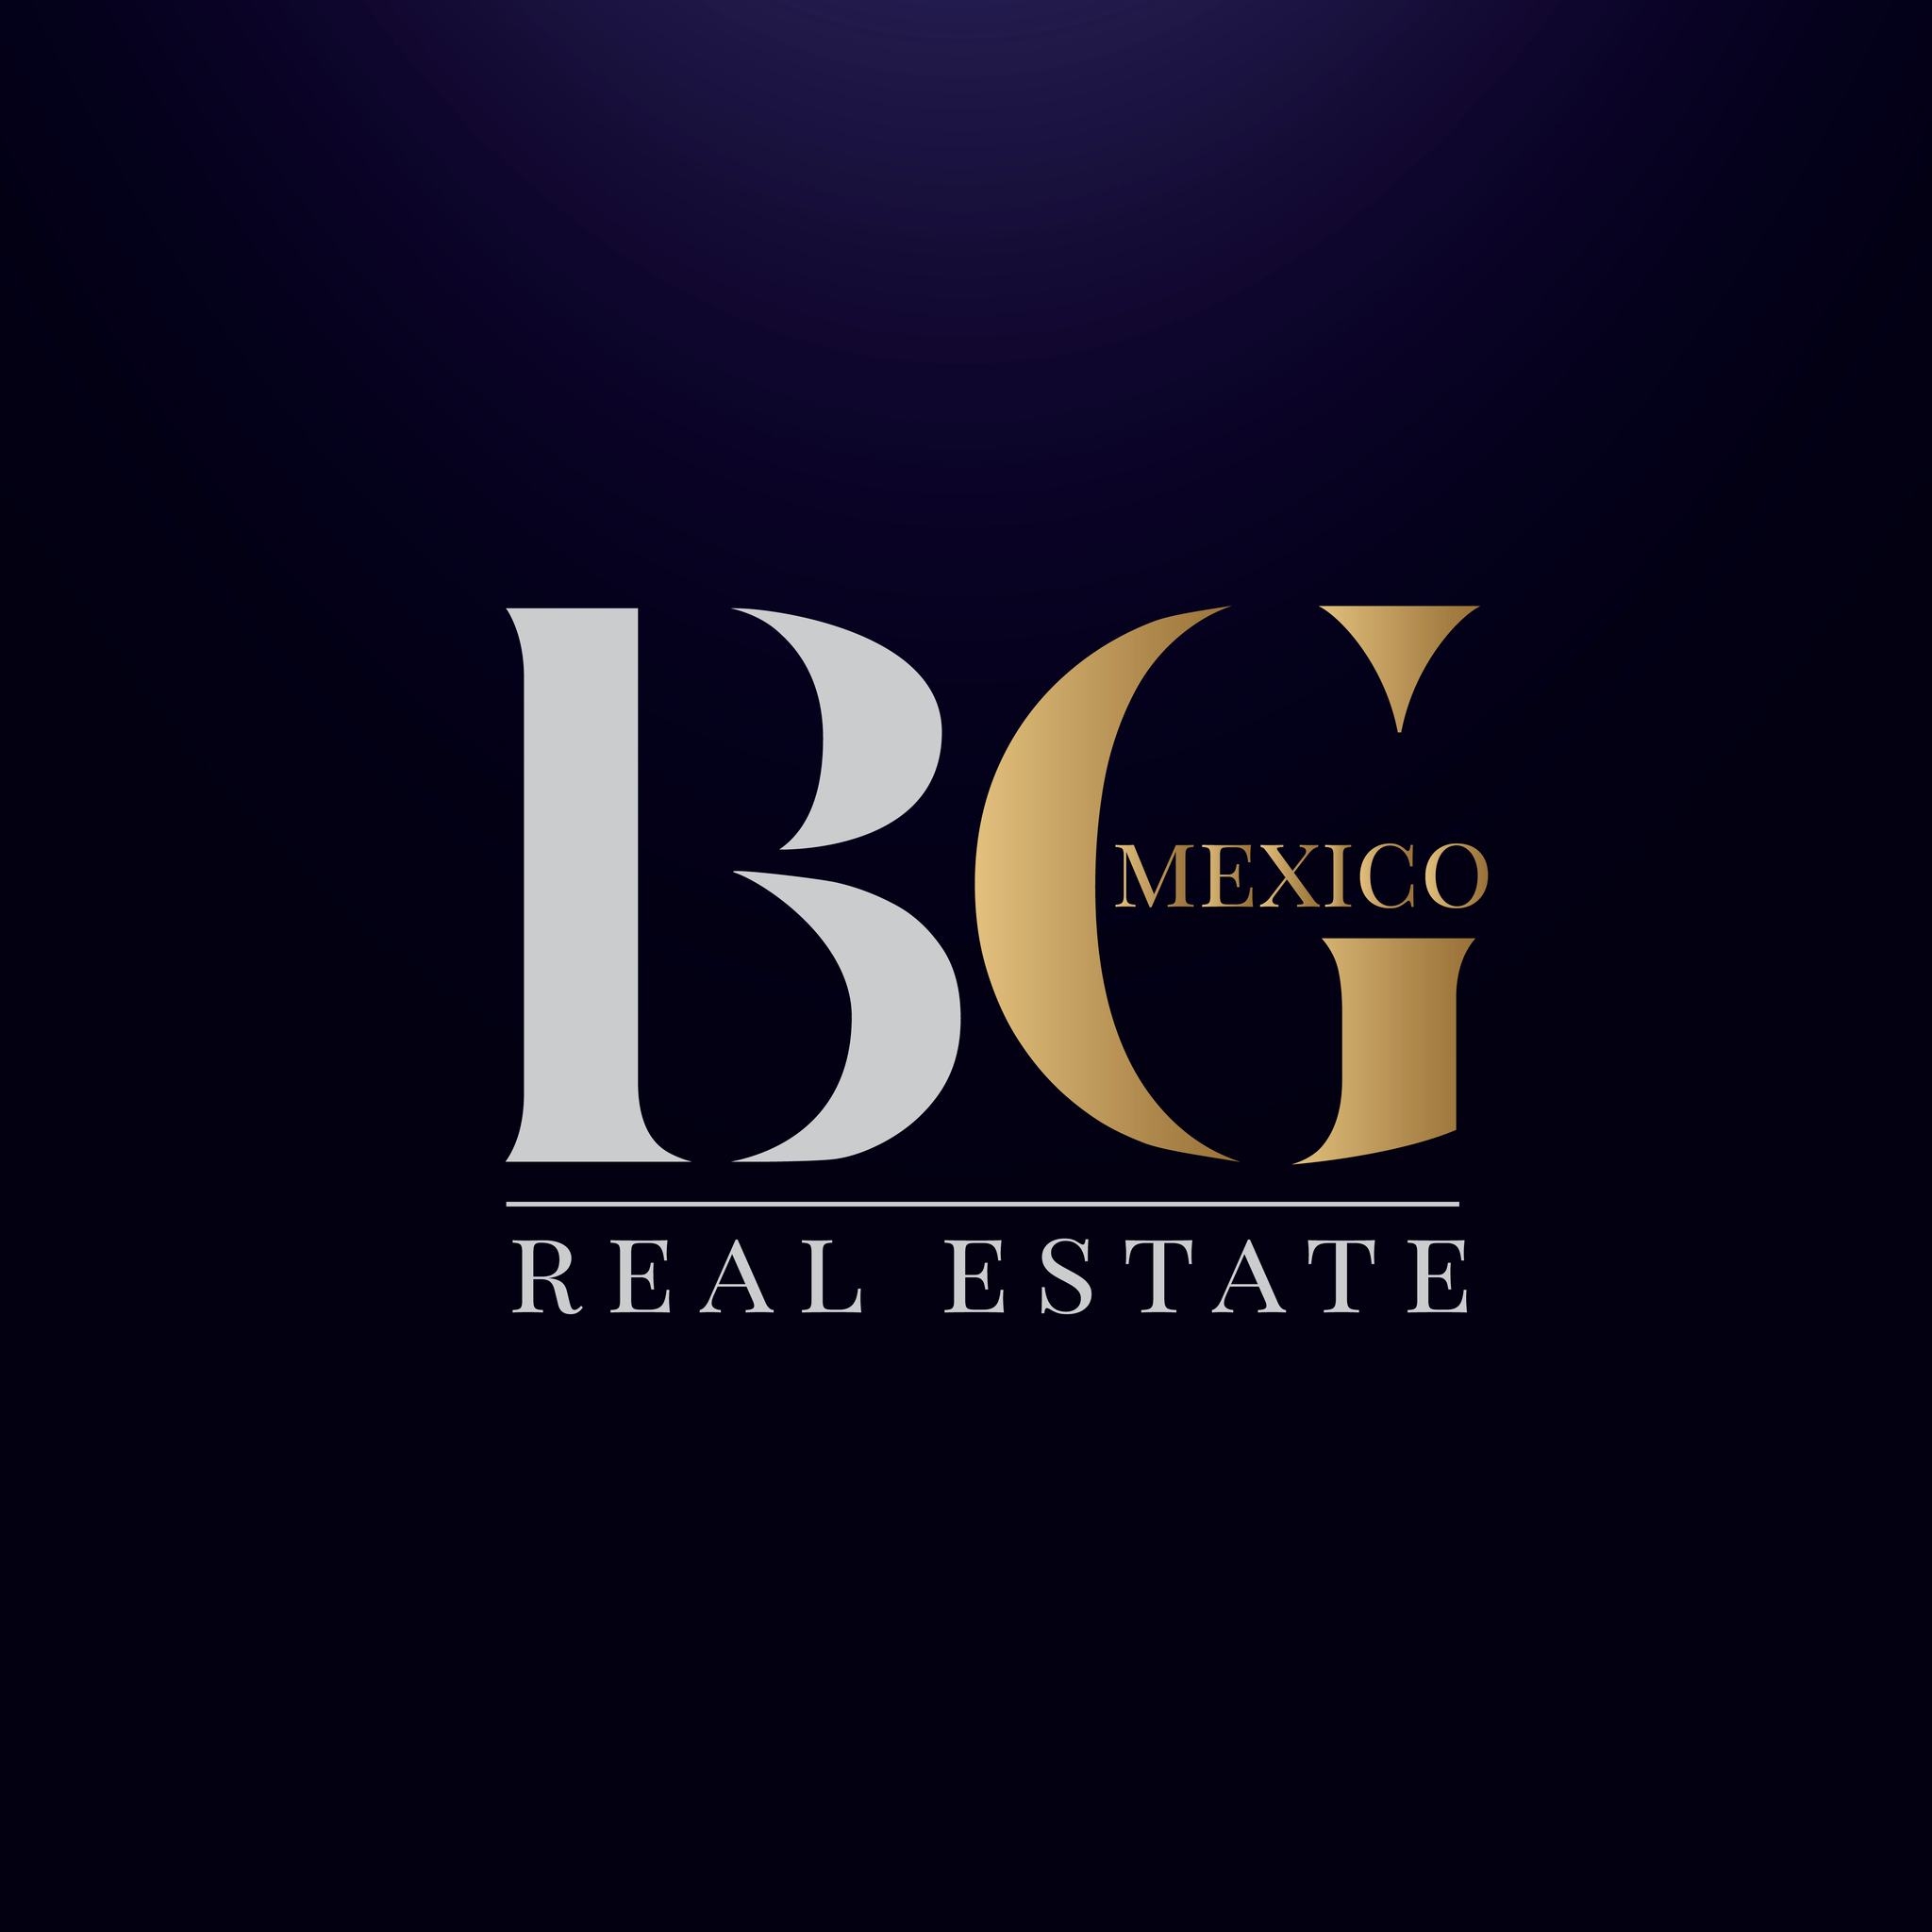 BG Real Estate  logo